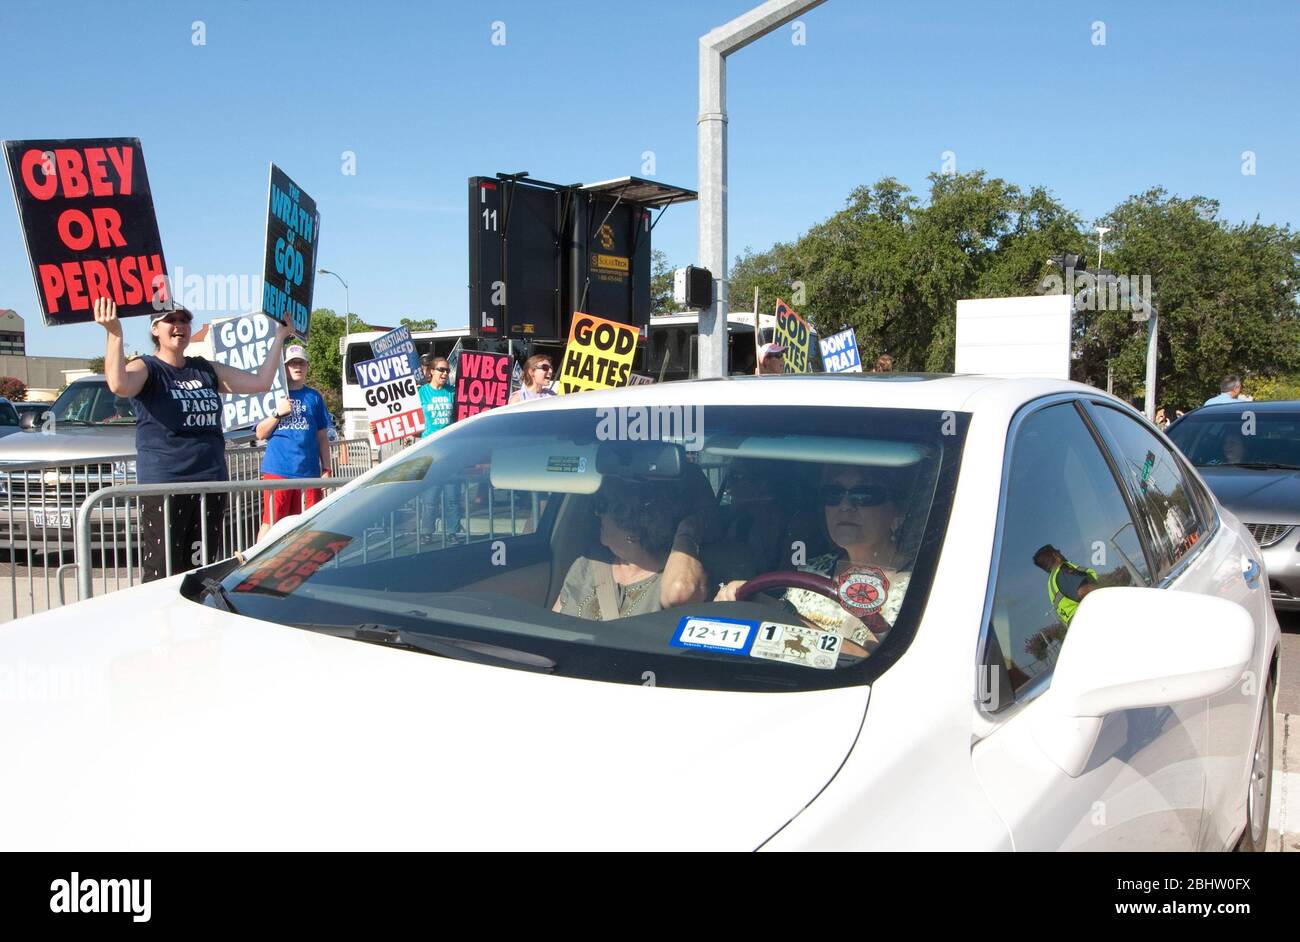 Houston, Texas, USA, 6. August 2011: Die Fahrer fahren an Picketern der Westboro Baptist Church vorbei und halten vor einer ganztägigen Gebetsveranstaltung auffällige Plakate auf. ©Marjorie Kamys Cotera/Daemmrich Photography Stockfoto